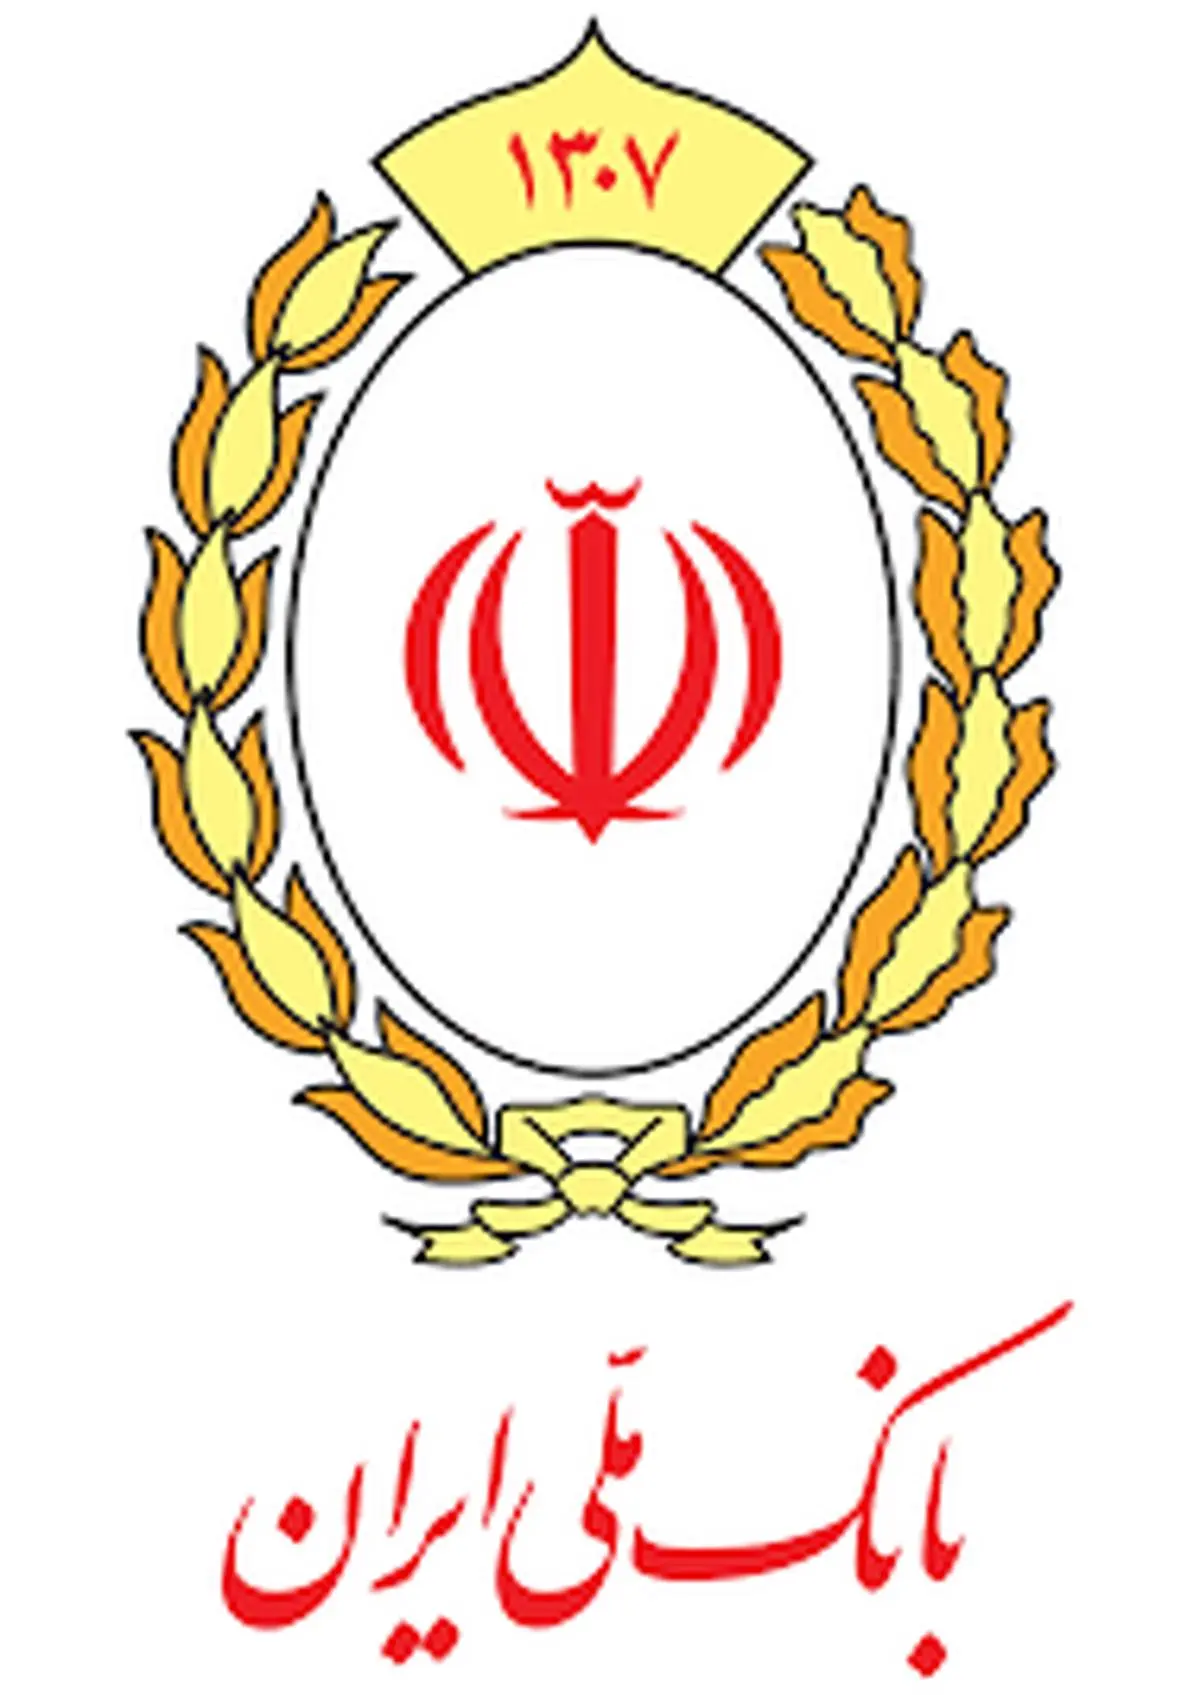 NPL بانک ملی ایران به 5/77 درصد کاهش یافت

